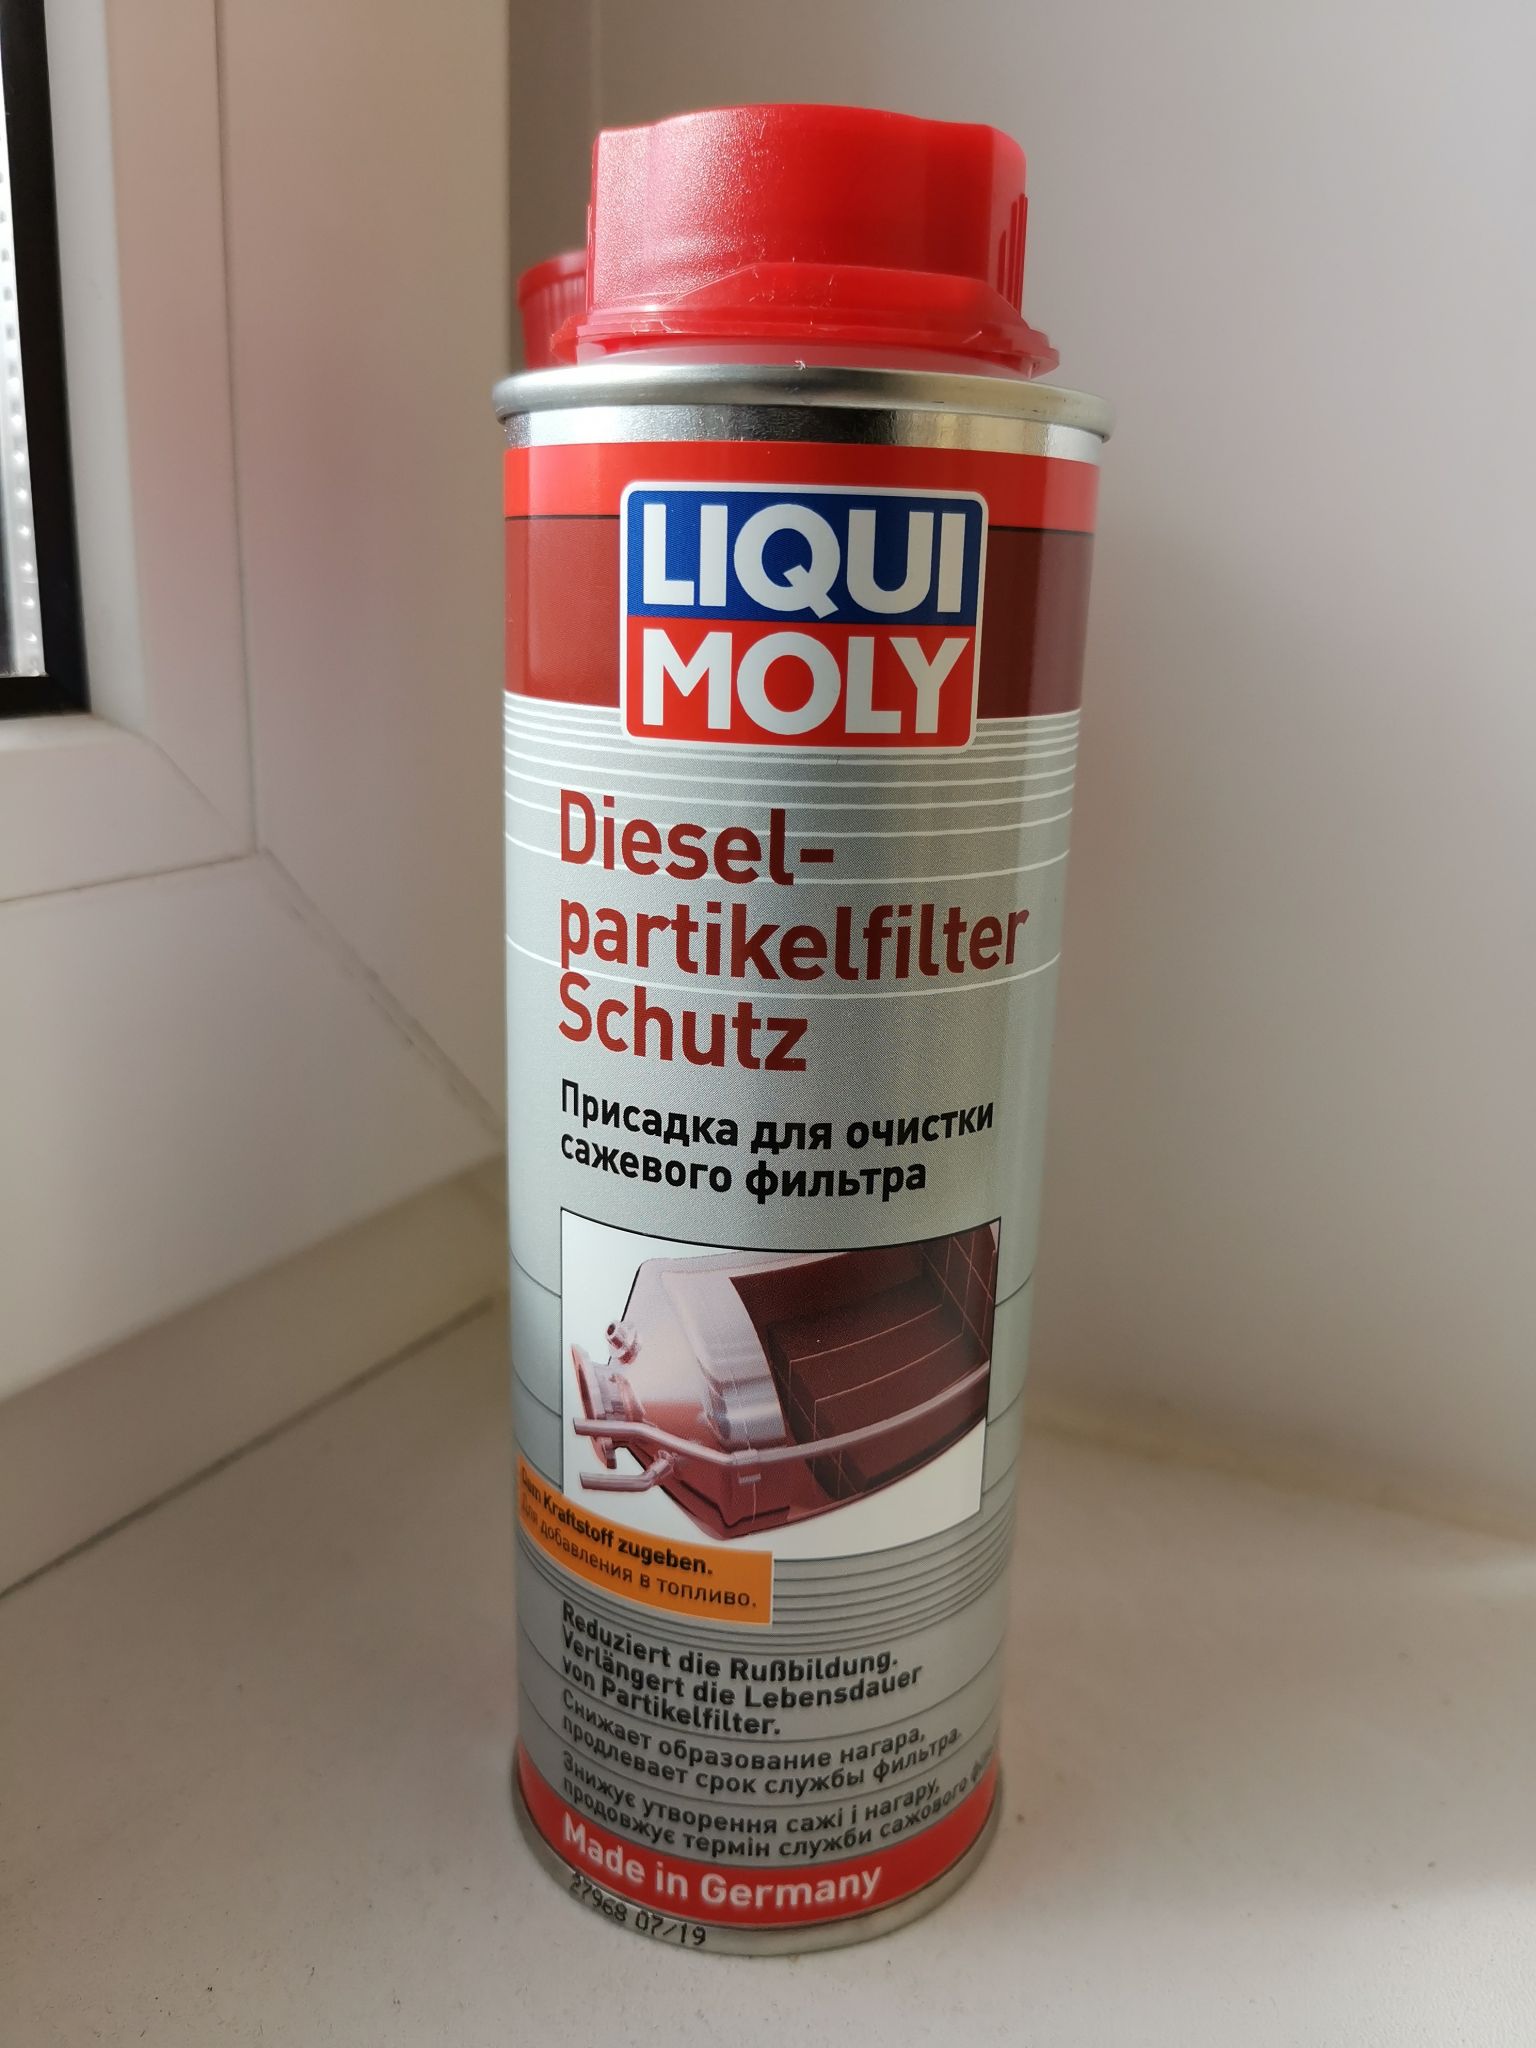 Присадка для очистки сажевого фильтра. Liqui Moly Diesel Partikelfilter Schutz. Liqui Moly Diesel. Liqui Moly для сажевого фильтра. Ликви моли для дизеля присадка 2010.